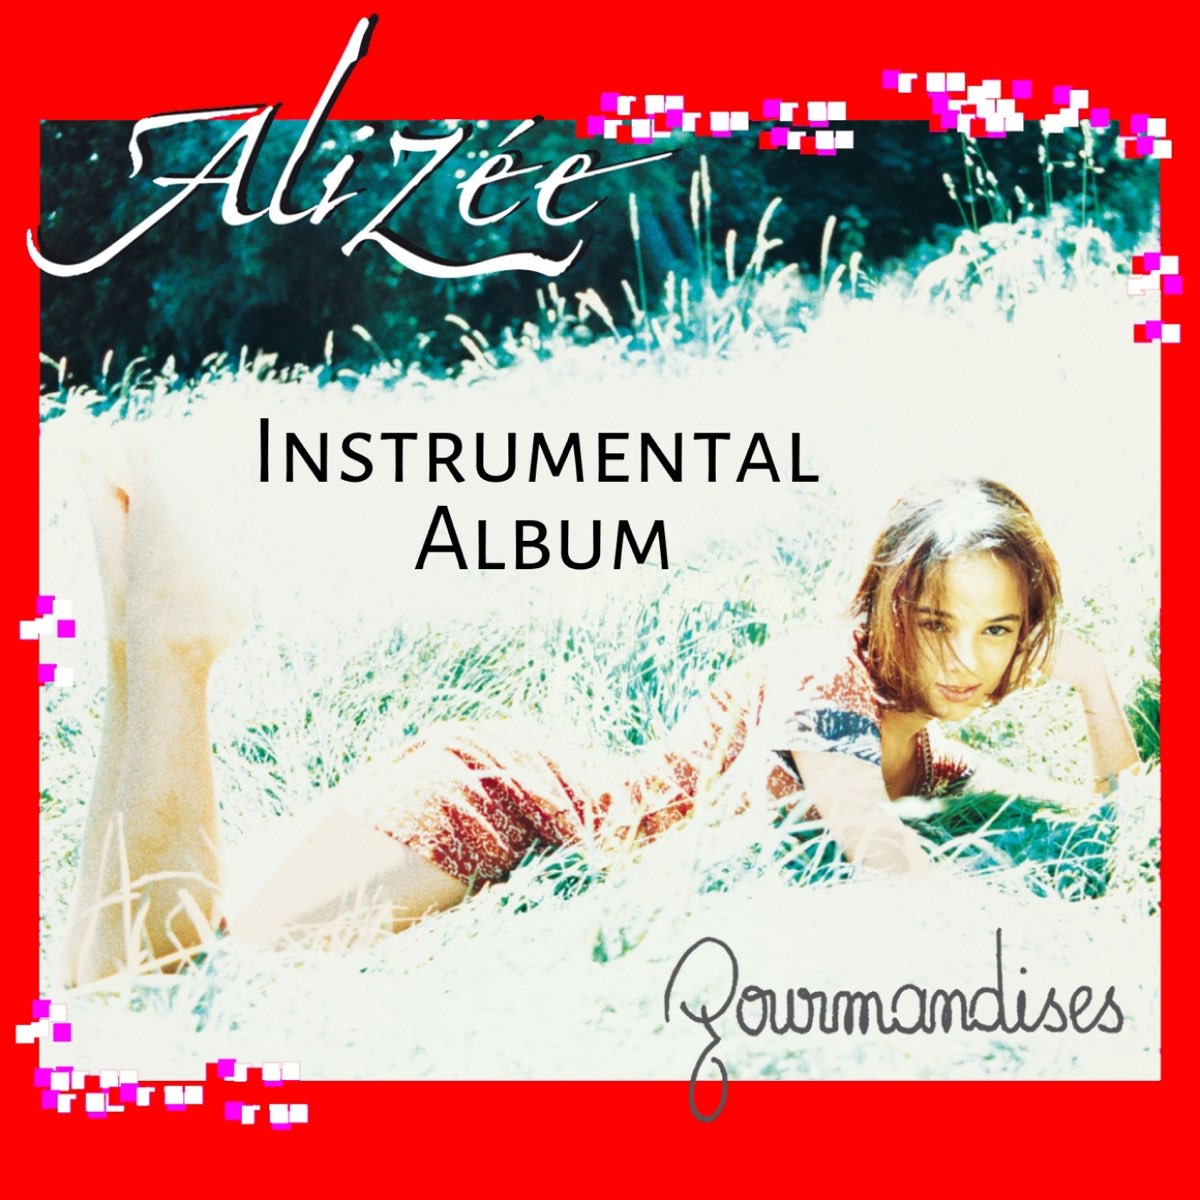 Gourmandises (Instrumental version) par Alizée sur Apple Music